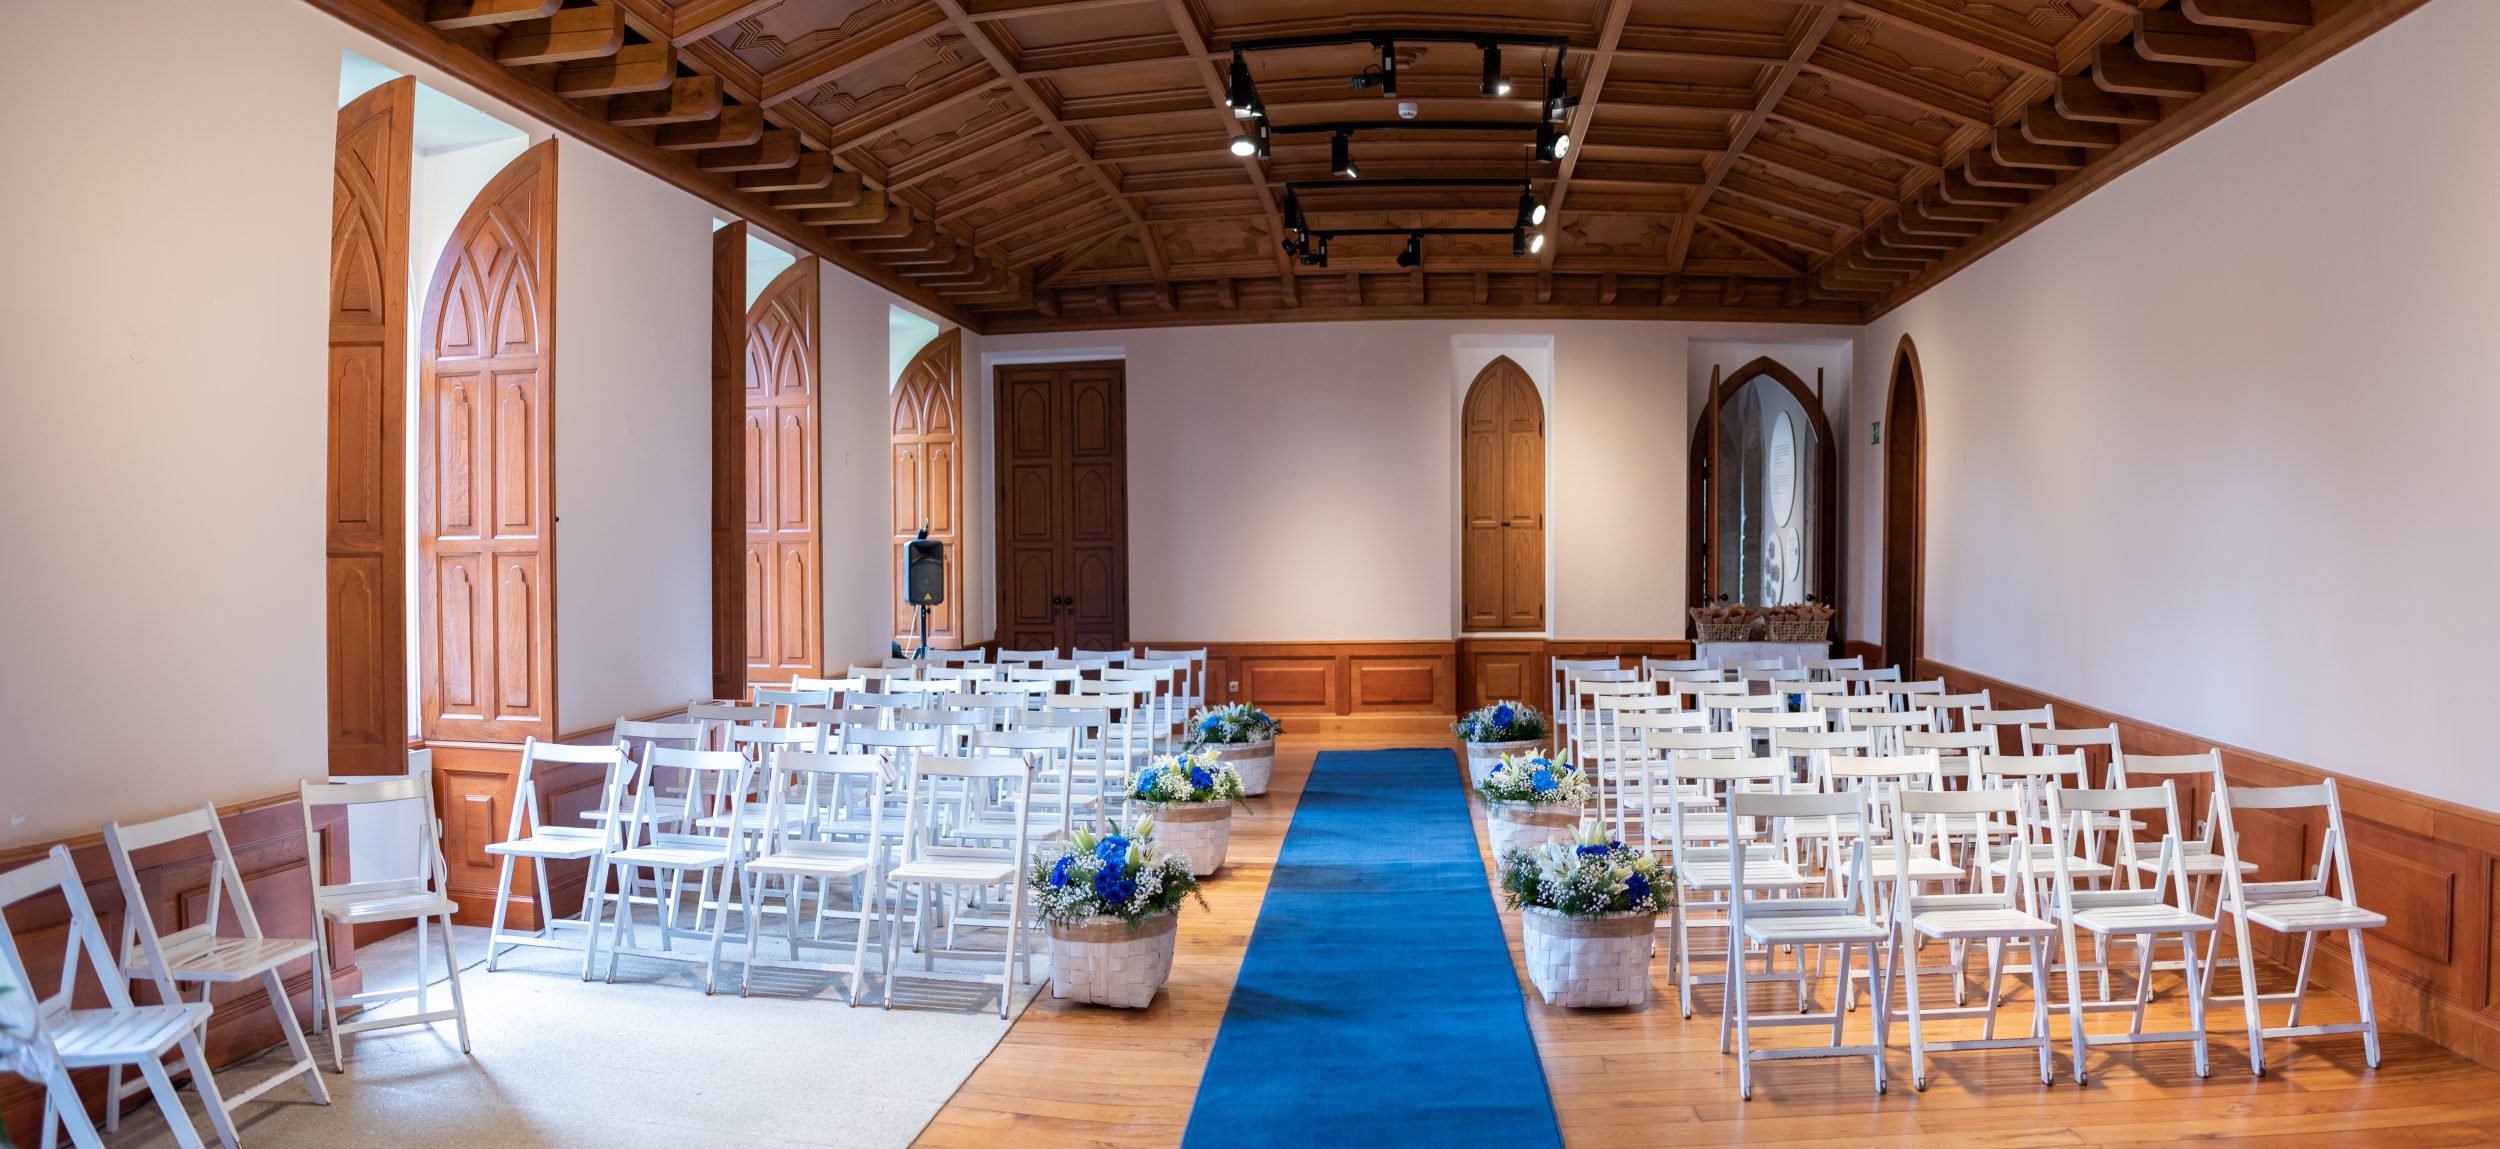 Salón vacío preparado para ceremonias con sillas y flores